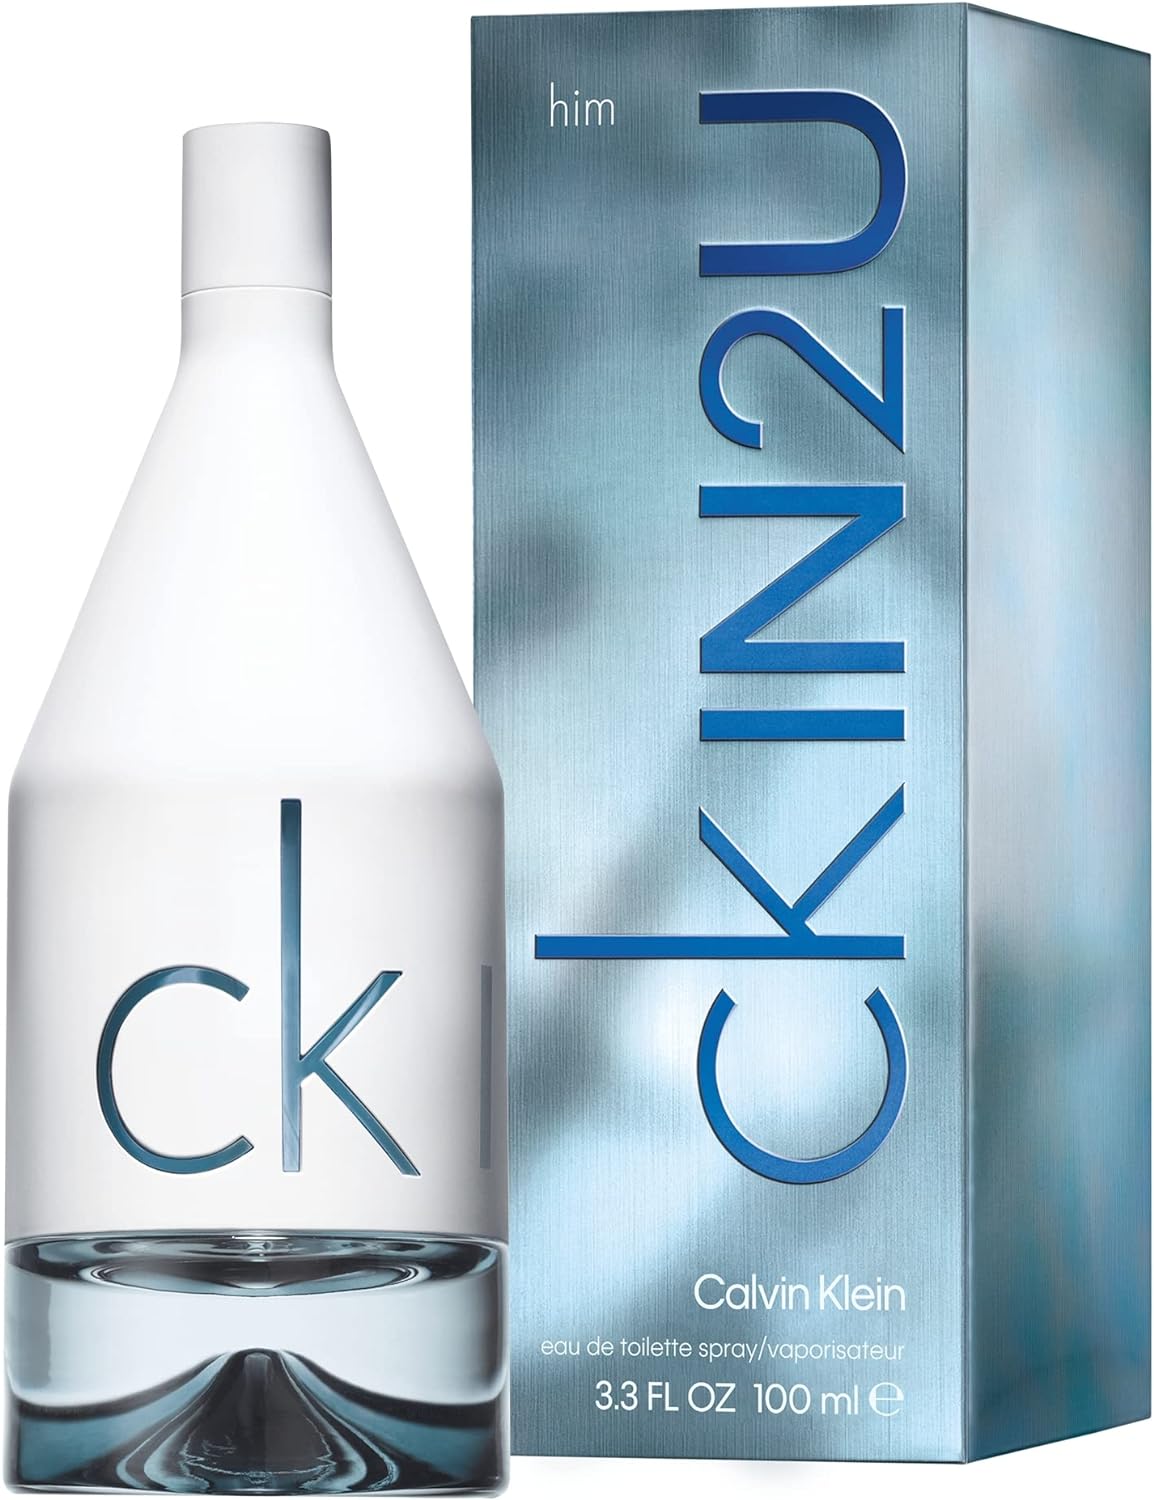 Ck IN2U by Calvin Klein for Men